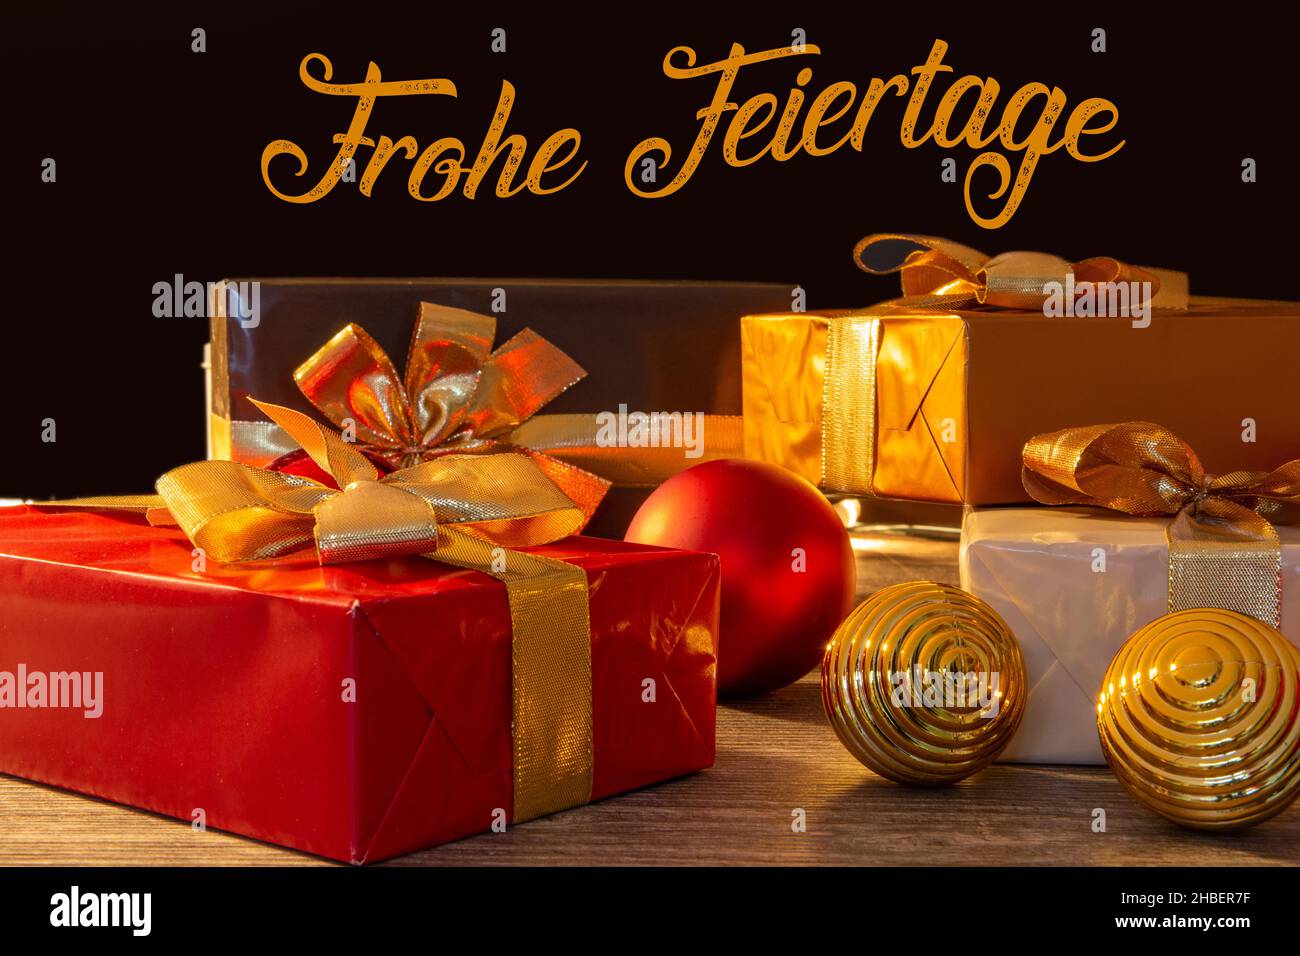 Mesa de regalo de Navidad con saludos de Navidad en alemán Foto de stock